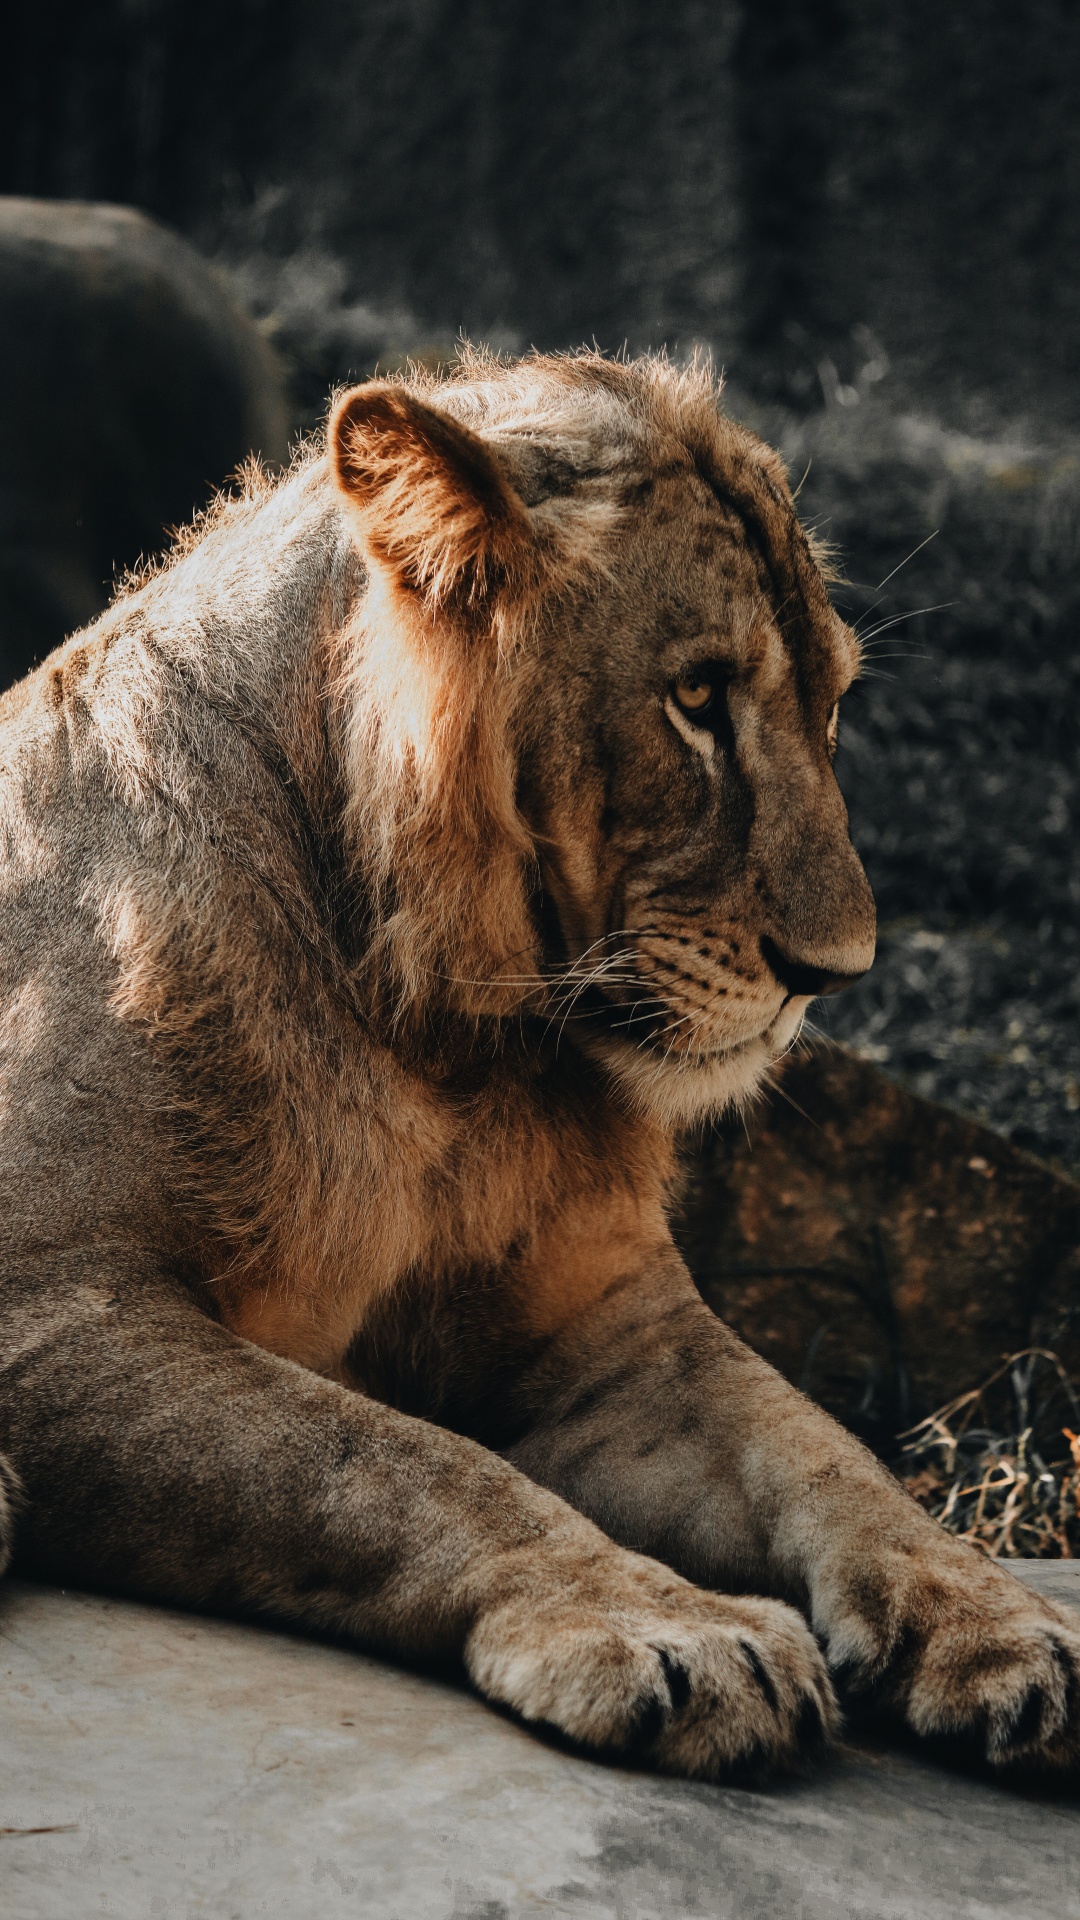 狮子, 猫科, 野生动物, 陆地动物, 大型猫科动物 壁纸 1080x1920 允许